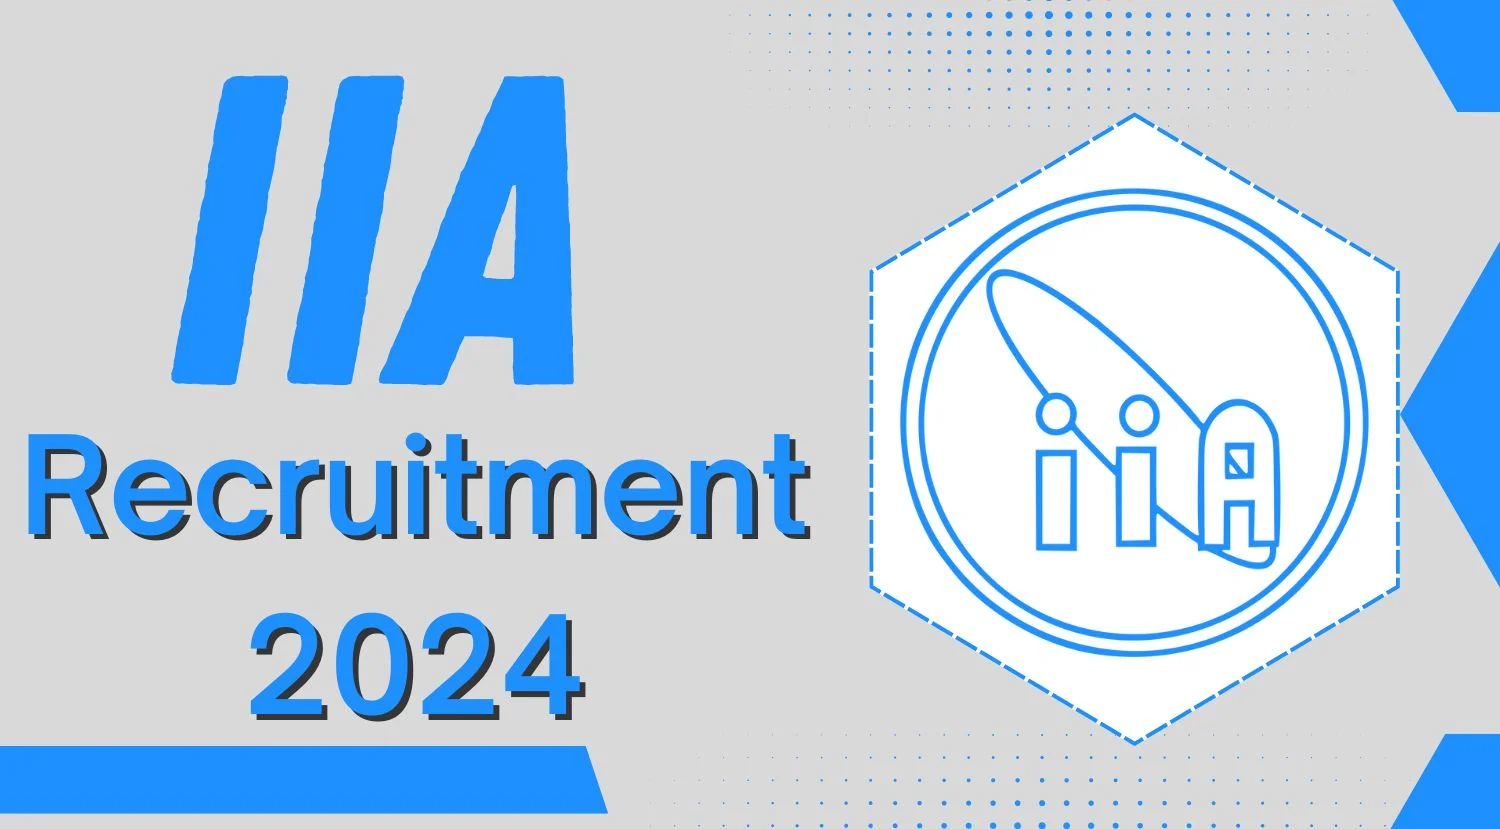 IIA Project Engineer - I (Mechanical) Recruitment 2024